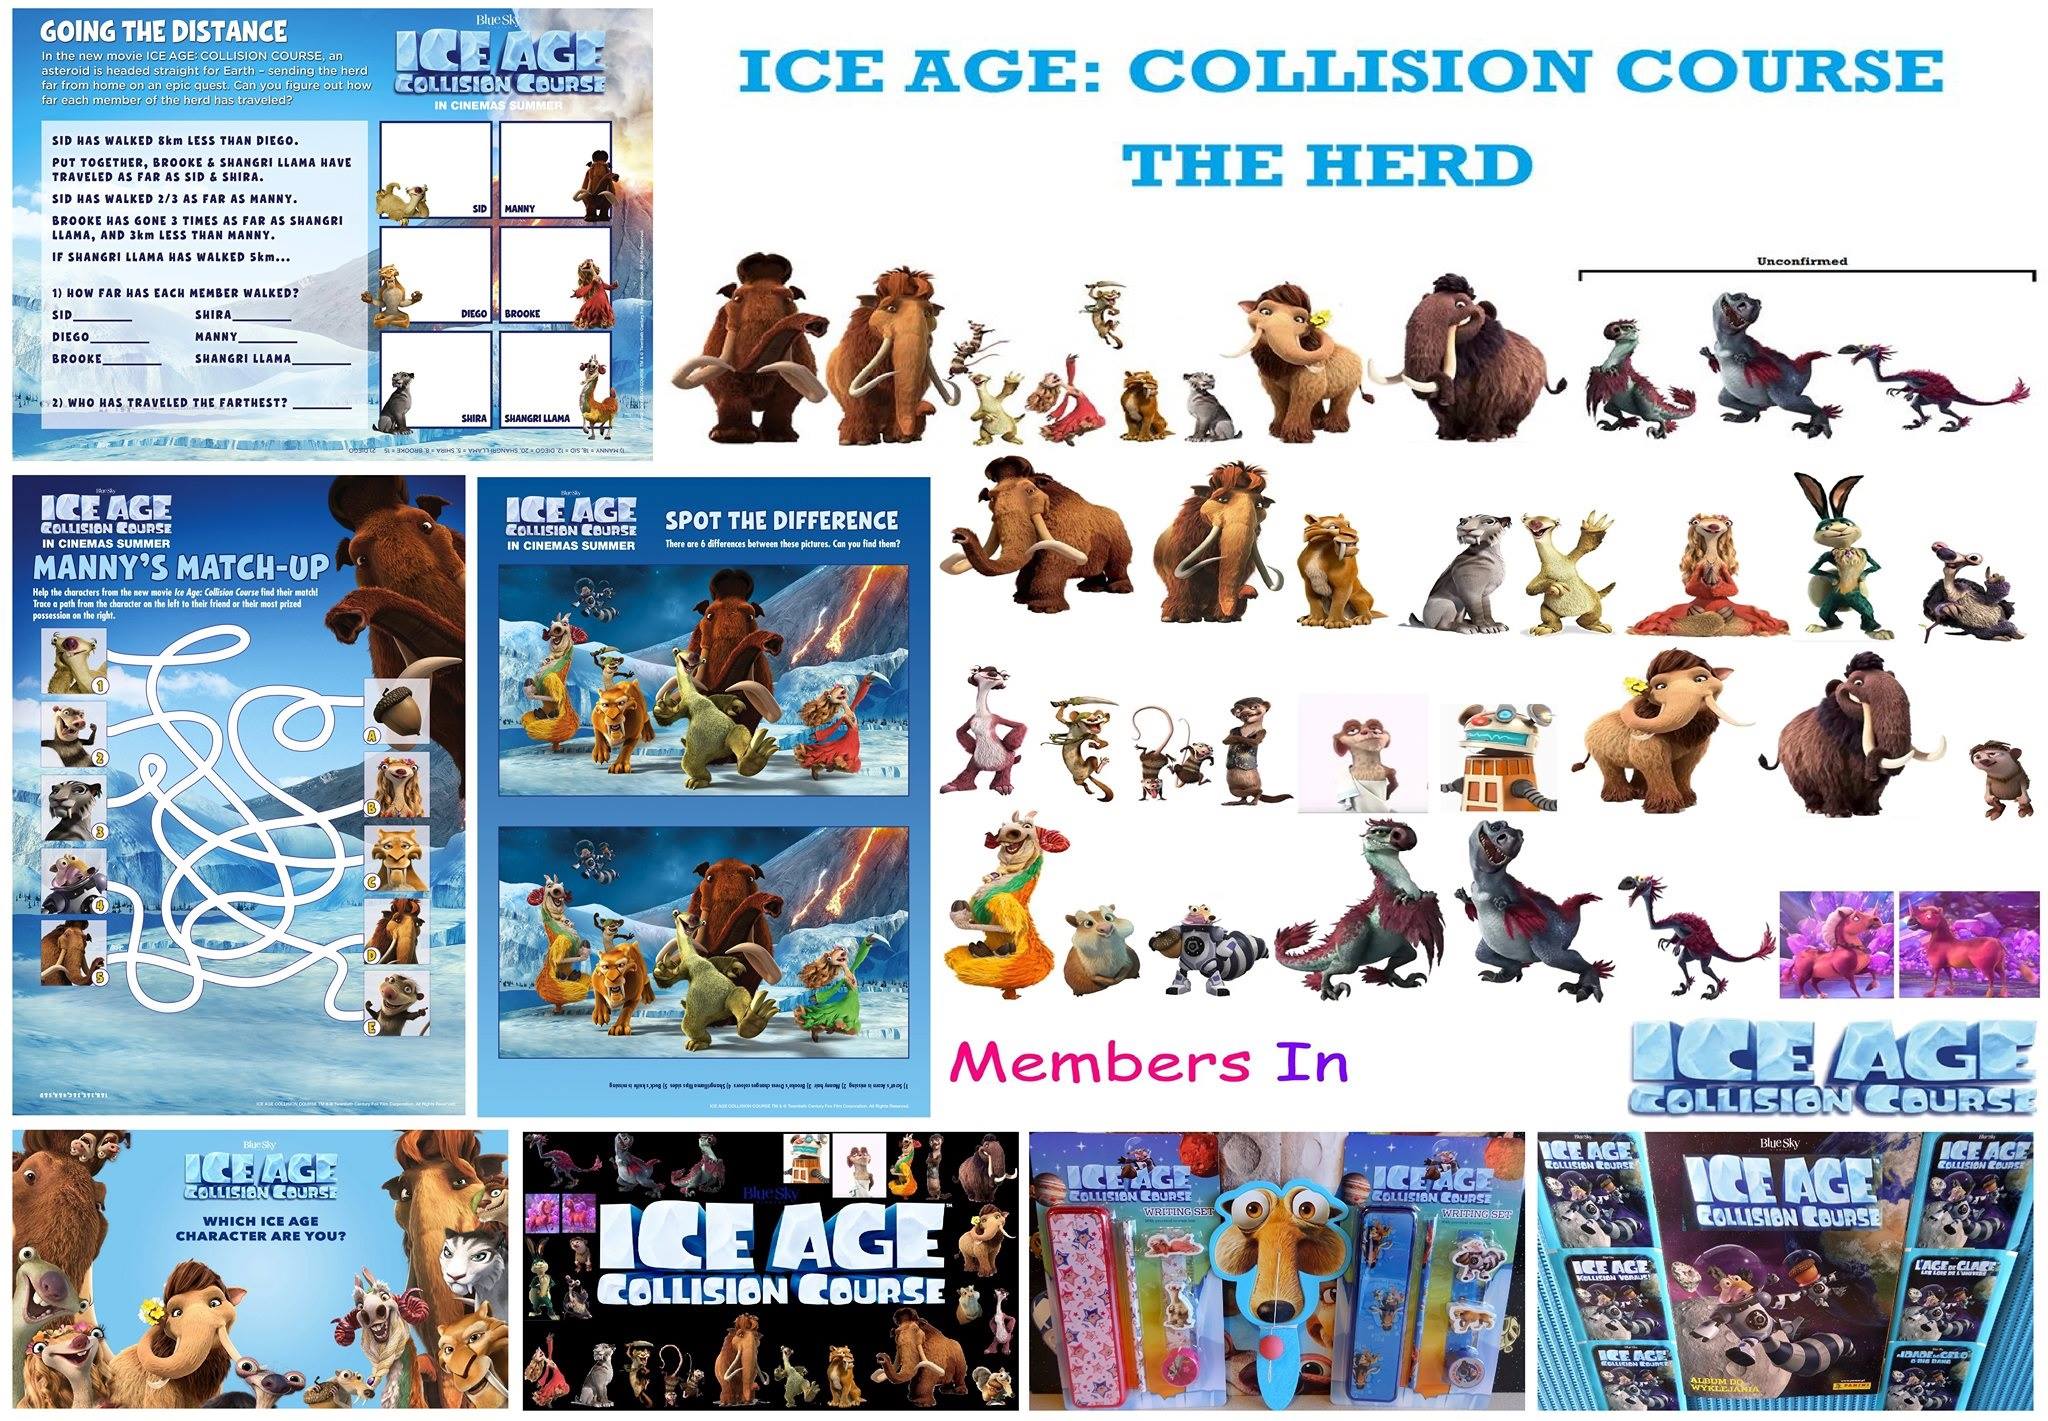 ice age 5